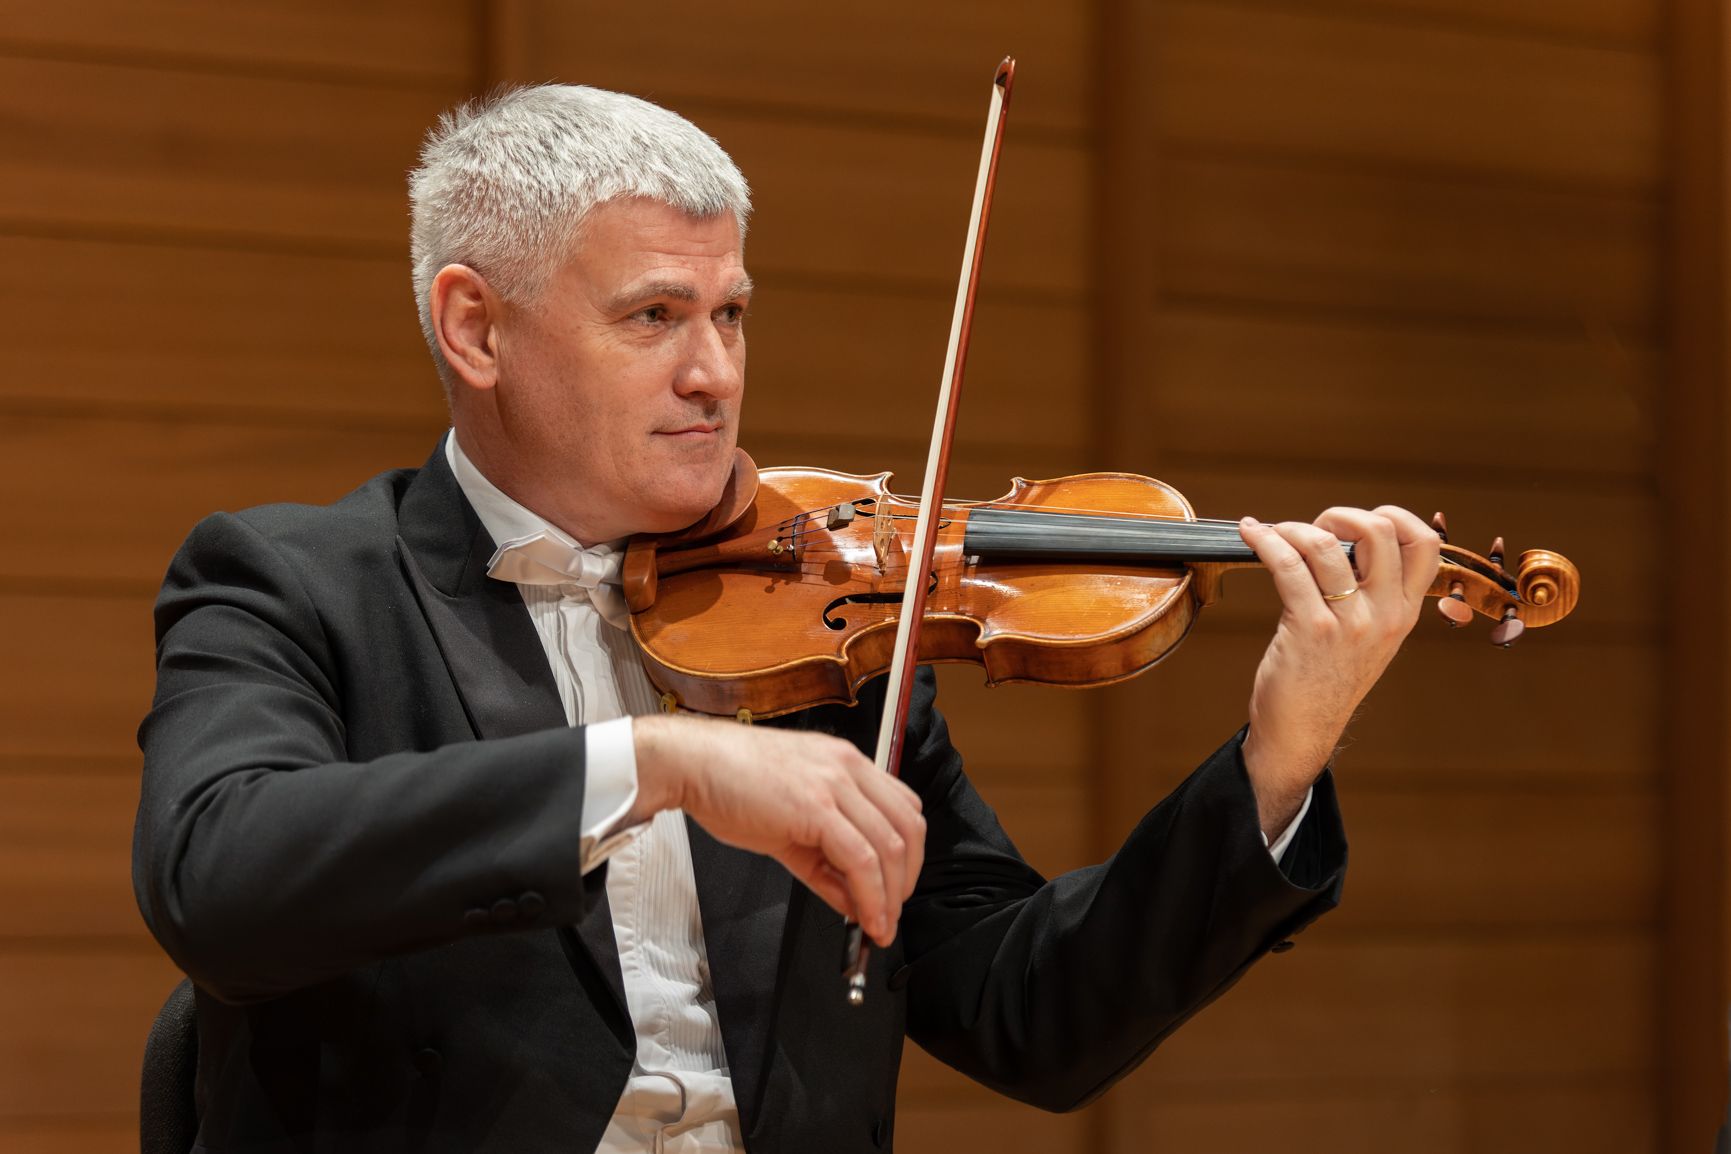 Mislav Pavlin, violin